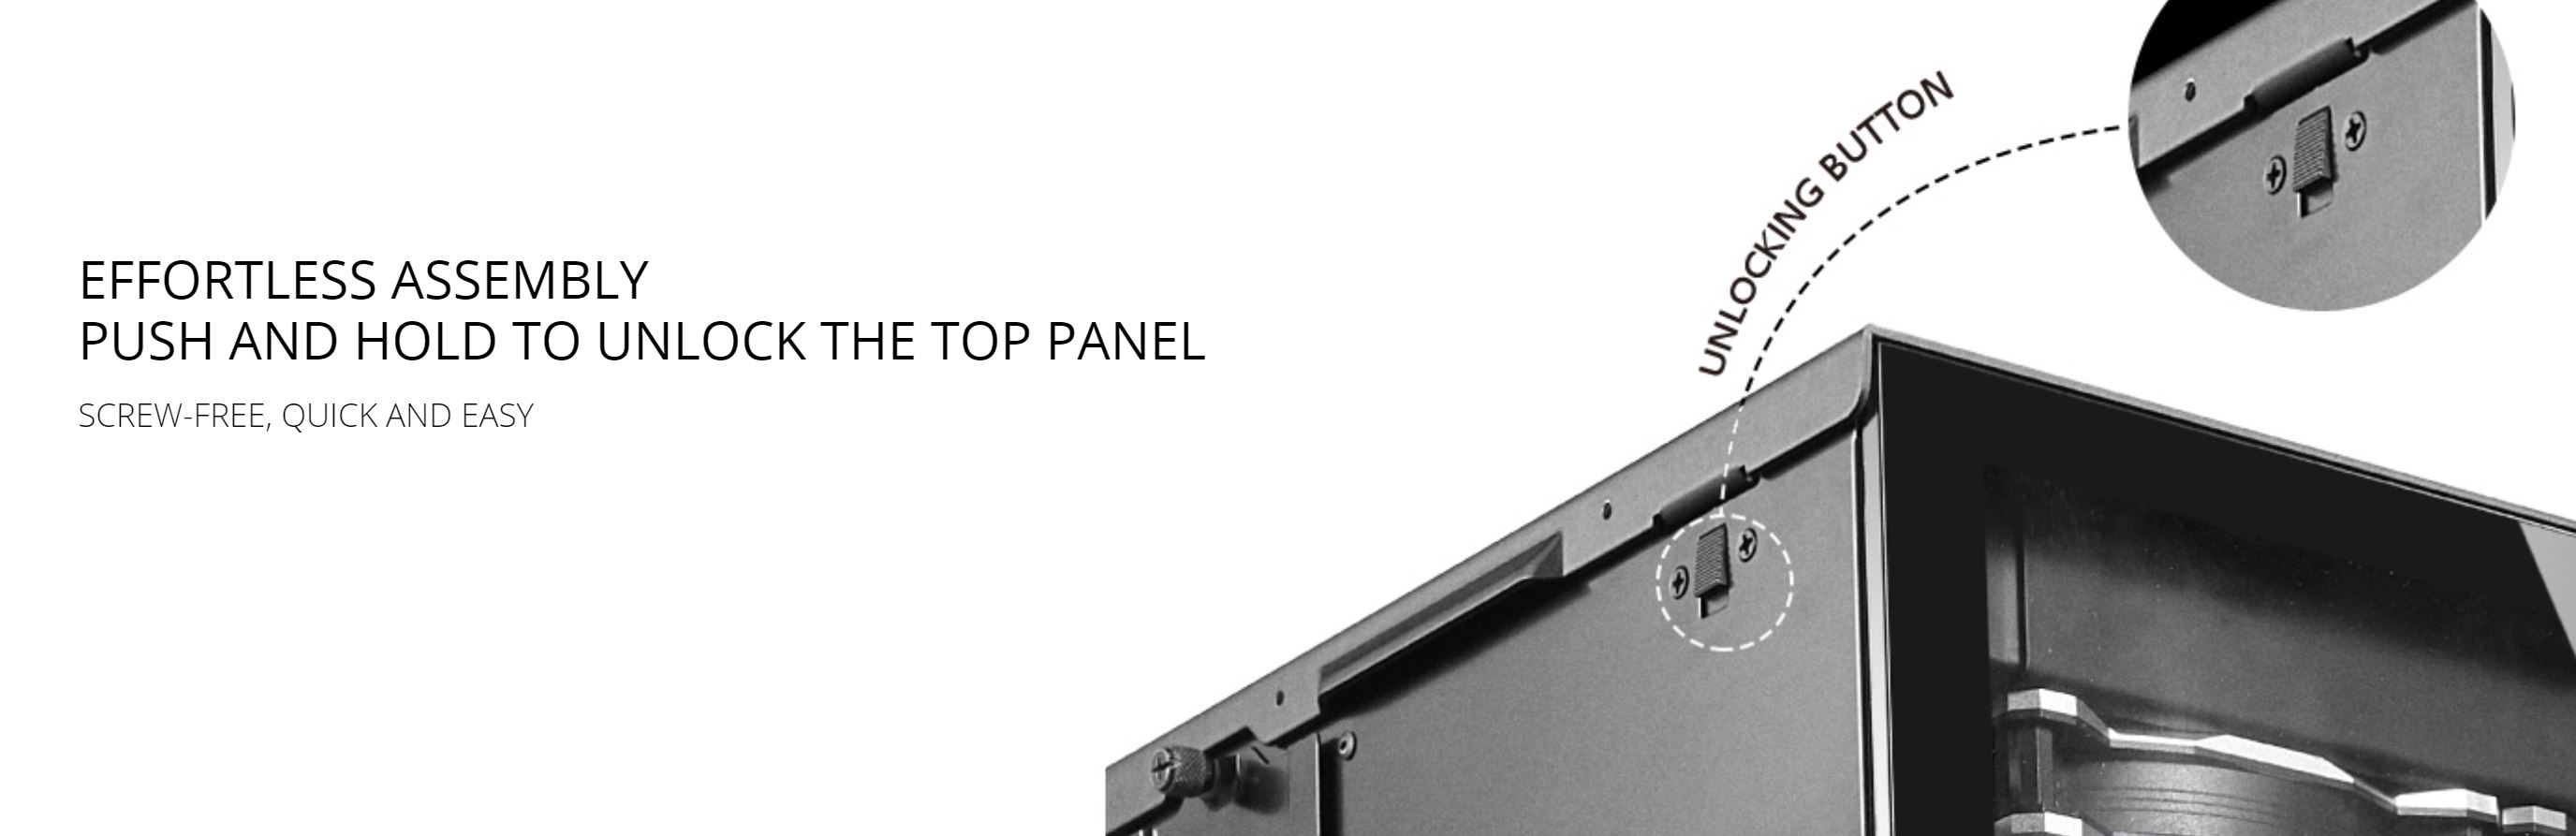 Lian Li PC-O11 Dynamic XL ROG Certified Tempered Glass RGB EATX Case - White